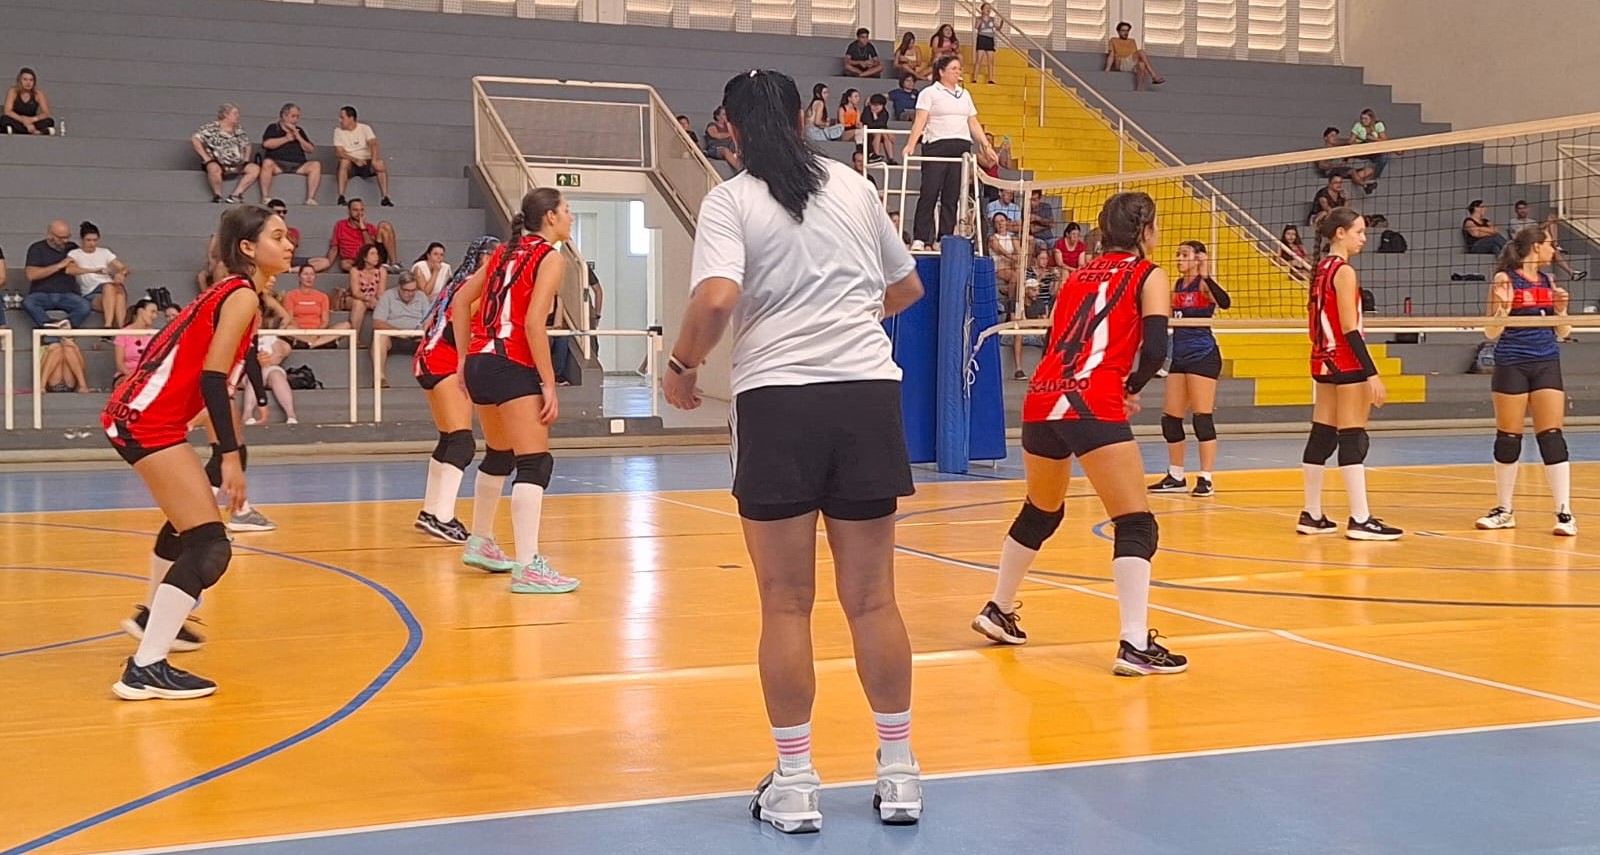 Voleibol de Descalvado fica com o 3º lugar em São Carlos